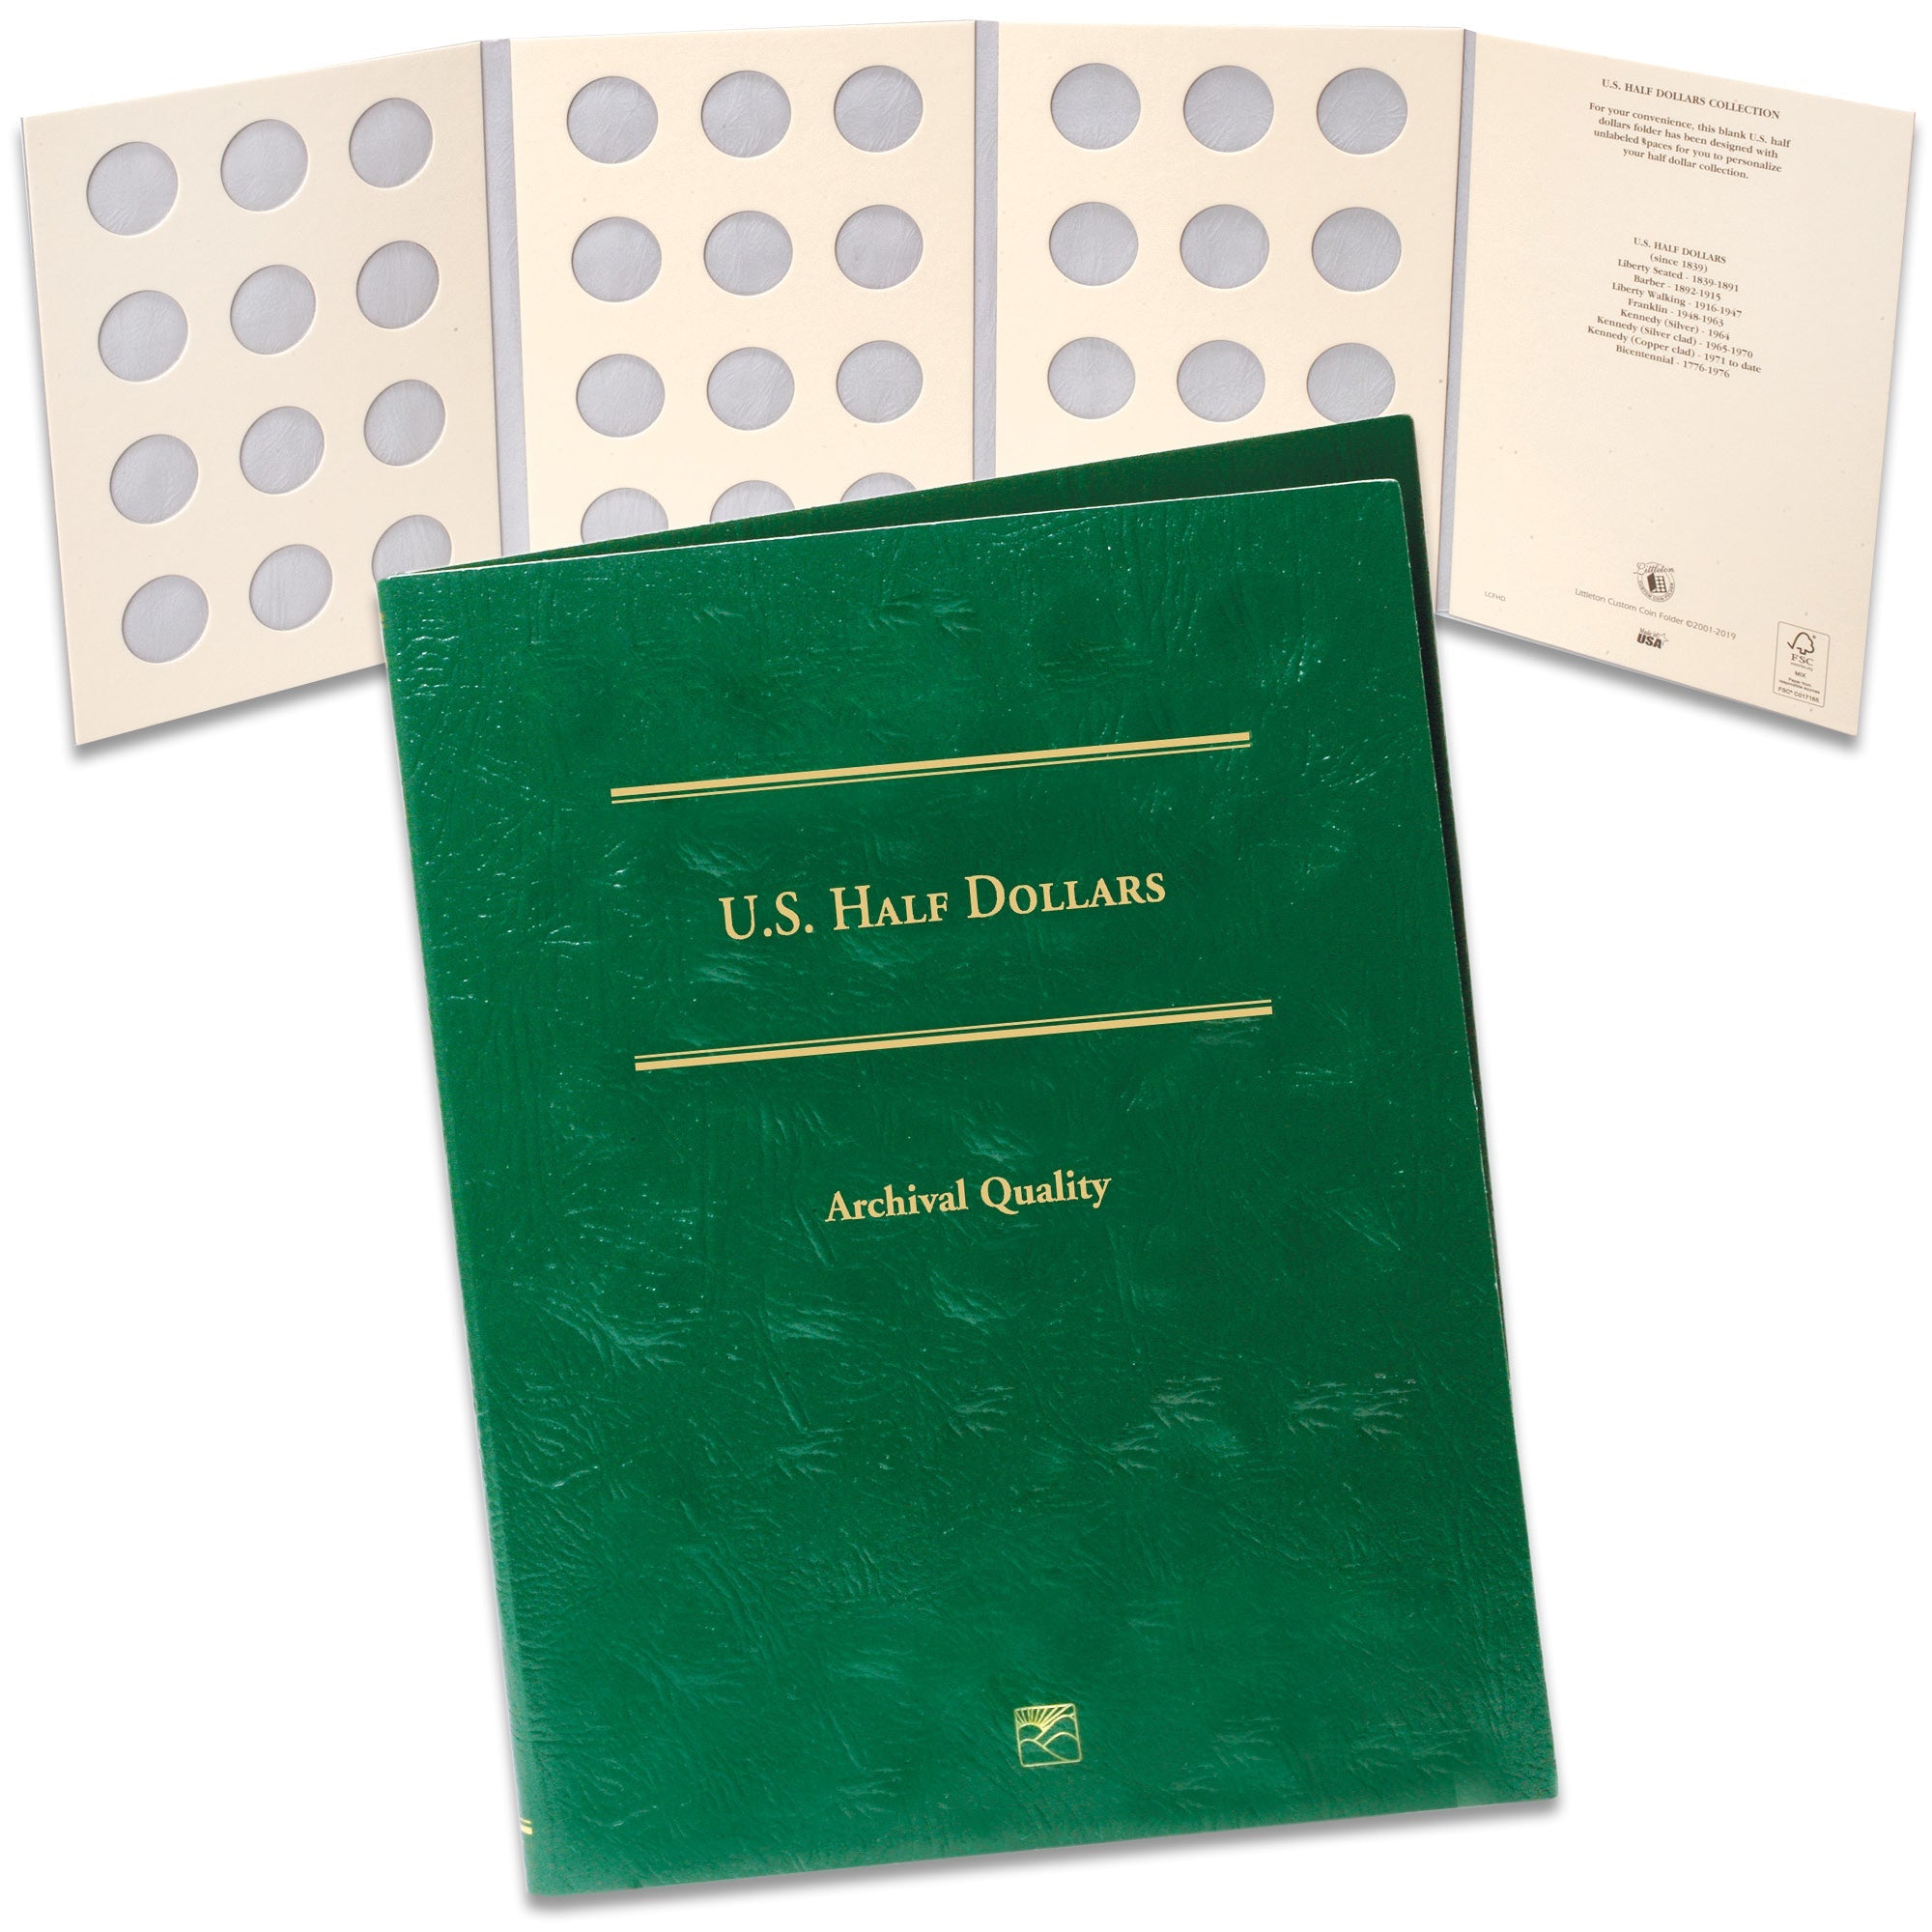 Blank U.S. Half Dollar Folder Littleton Coin Company